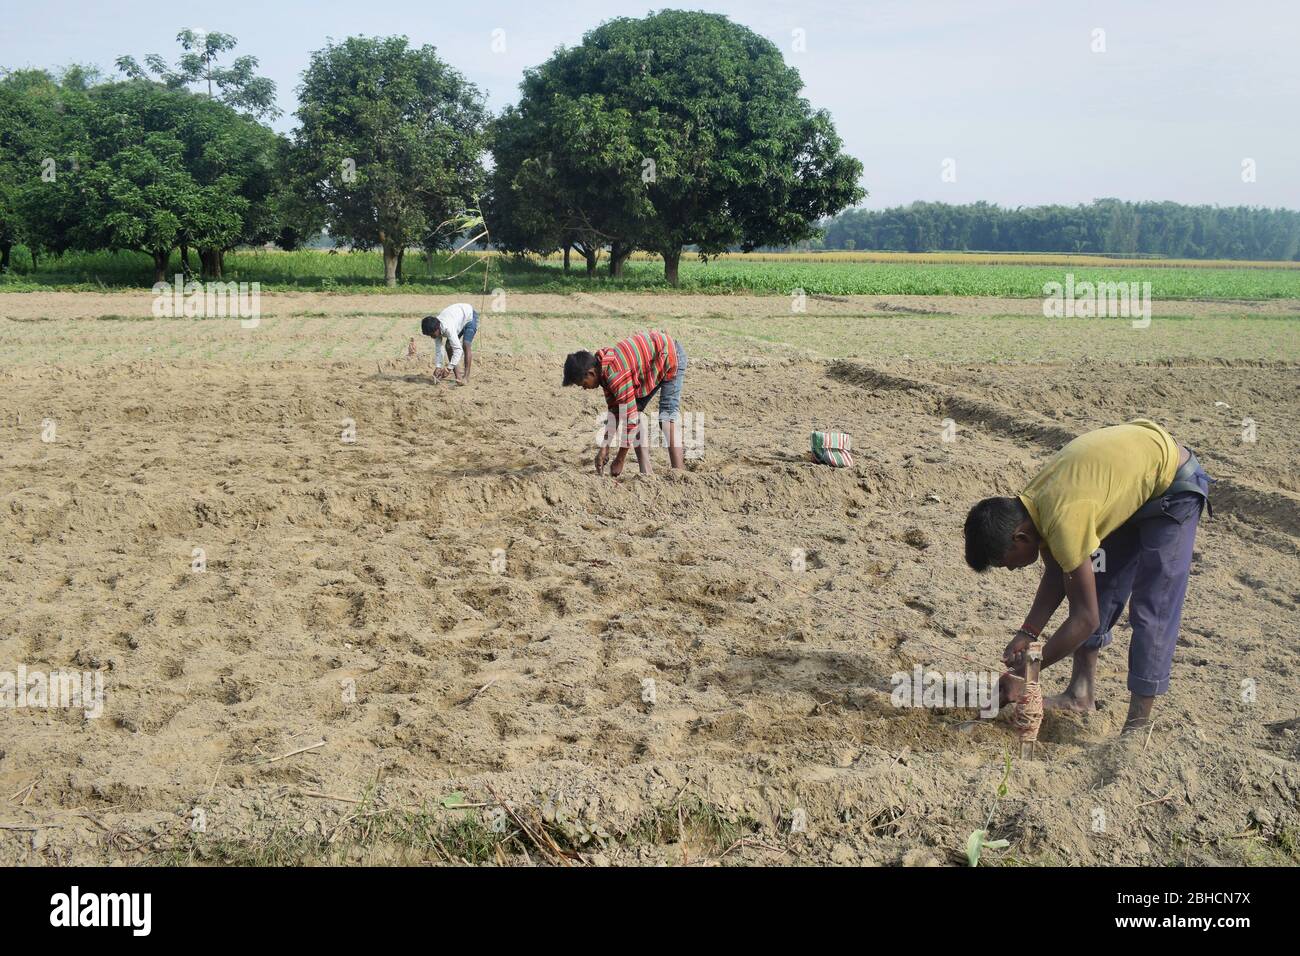 agriculteur indien travaillant dans son domaine. Inde Banque D'Images